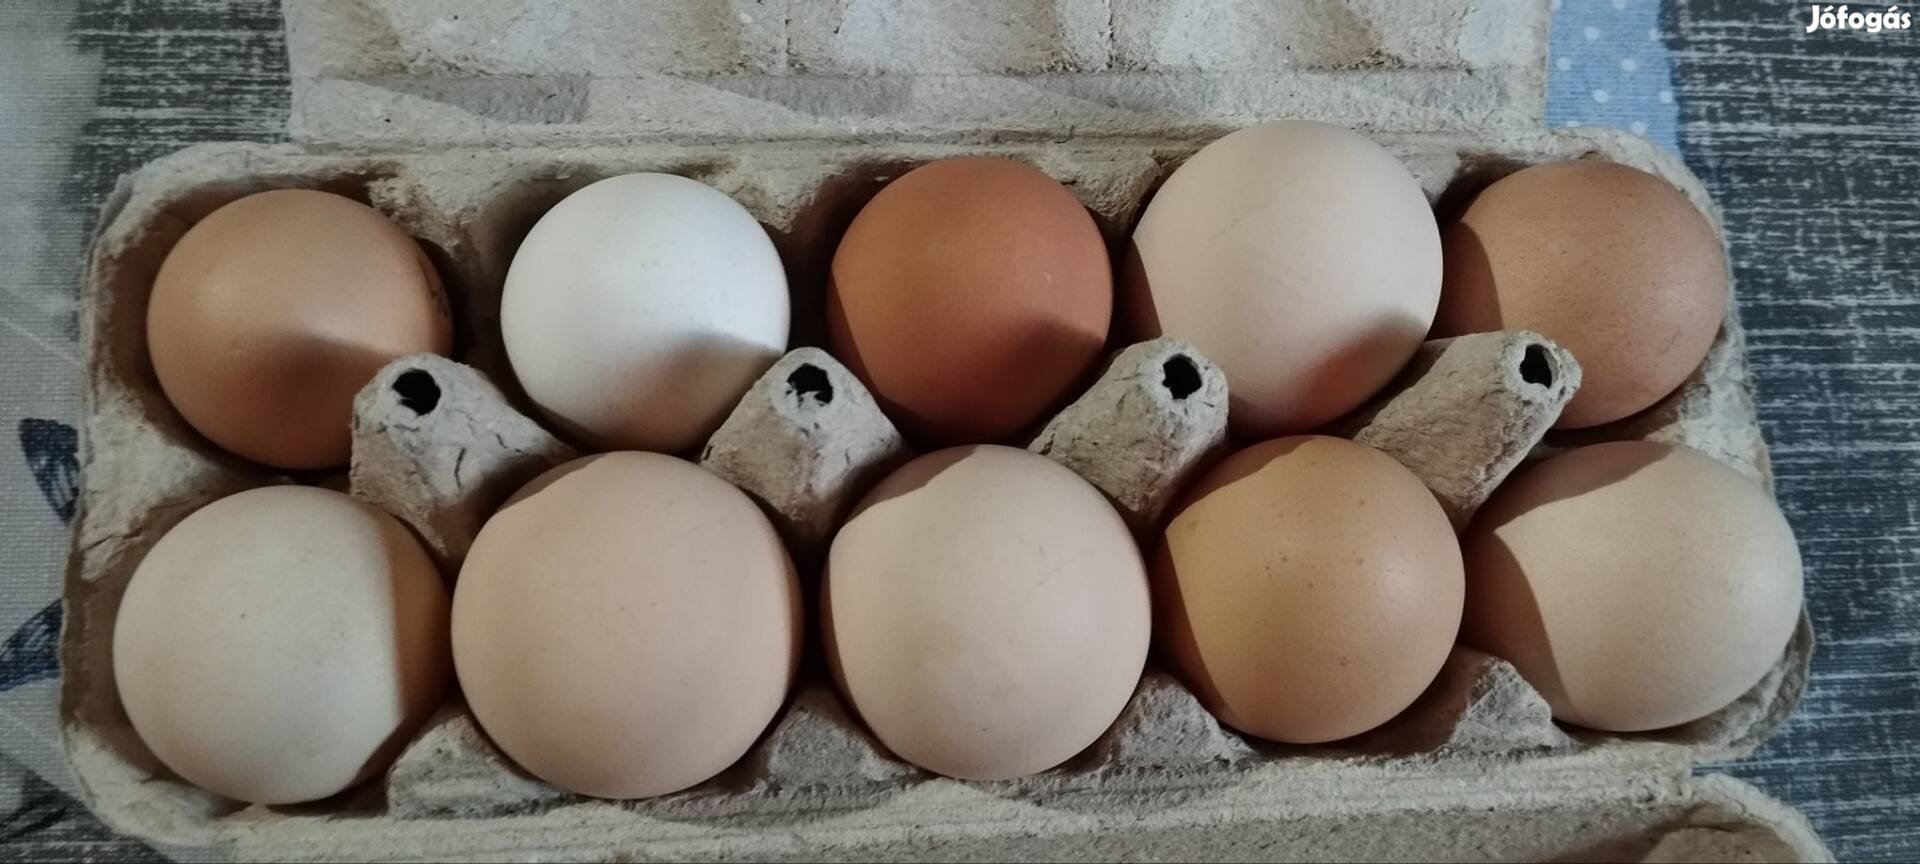 Házi tojás eladó